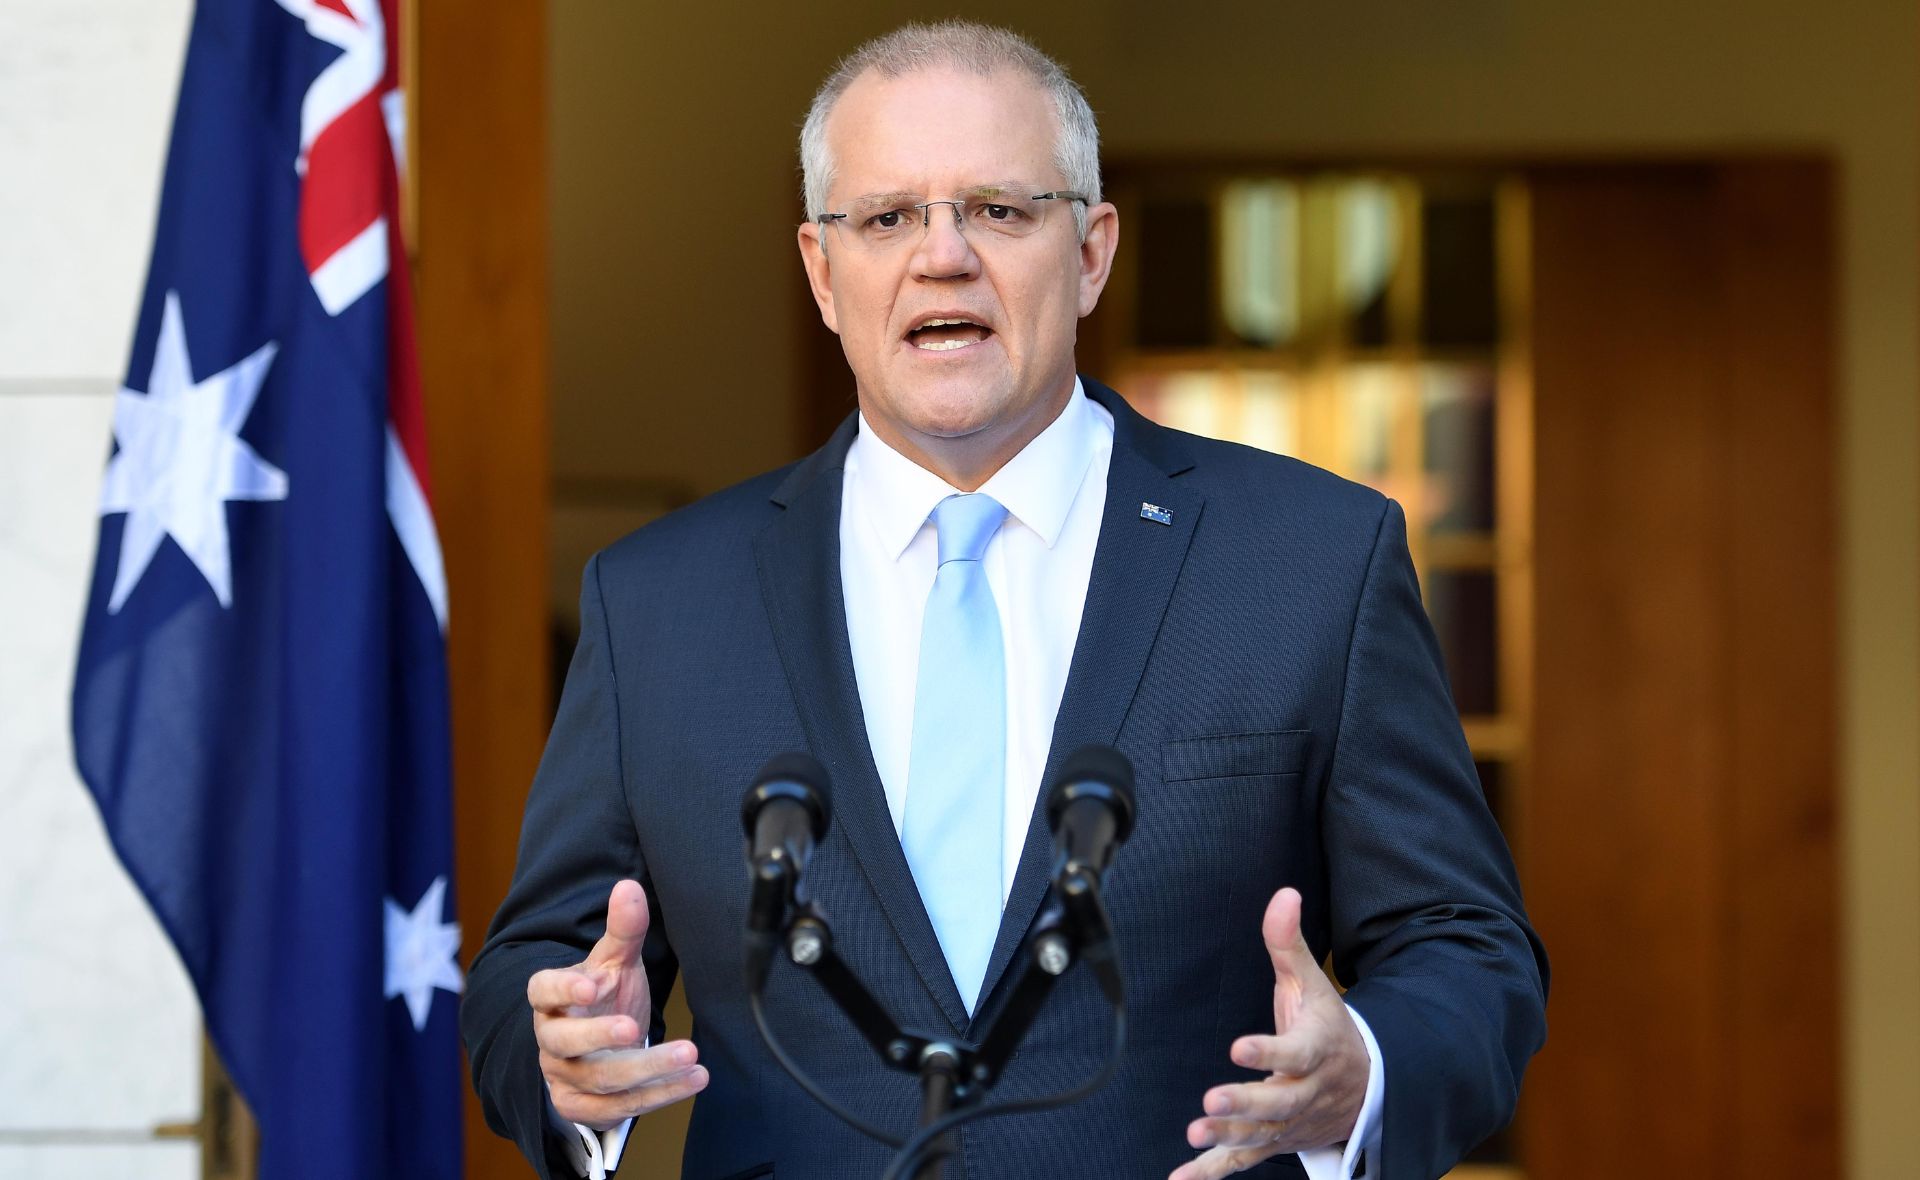 Here’s why Australia is enraged over Scott Morrison’s latest job scandal